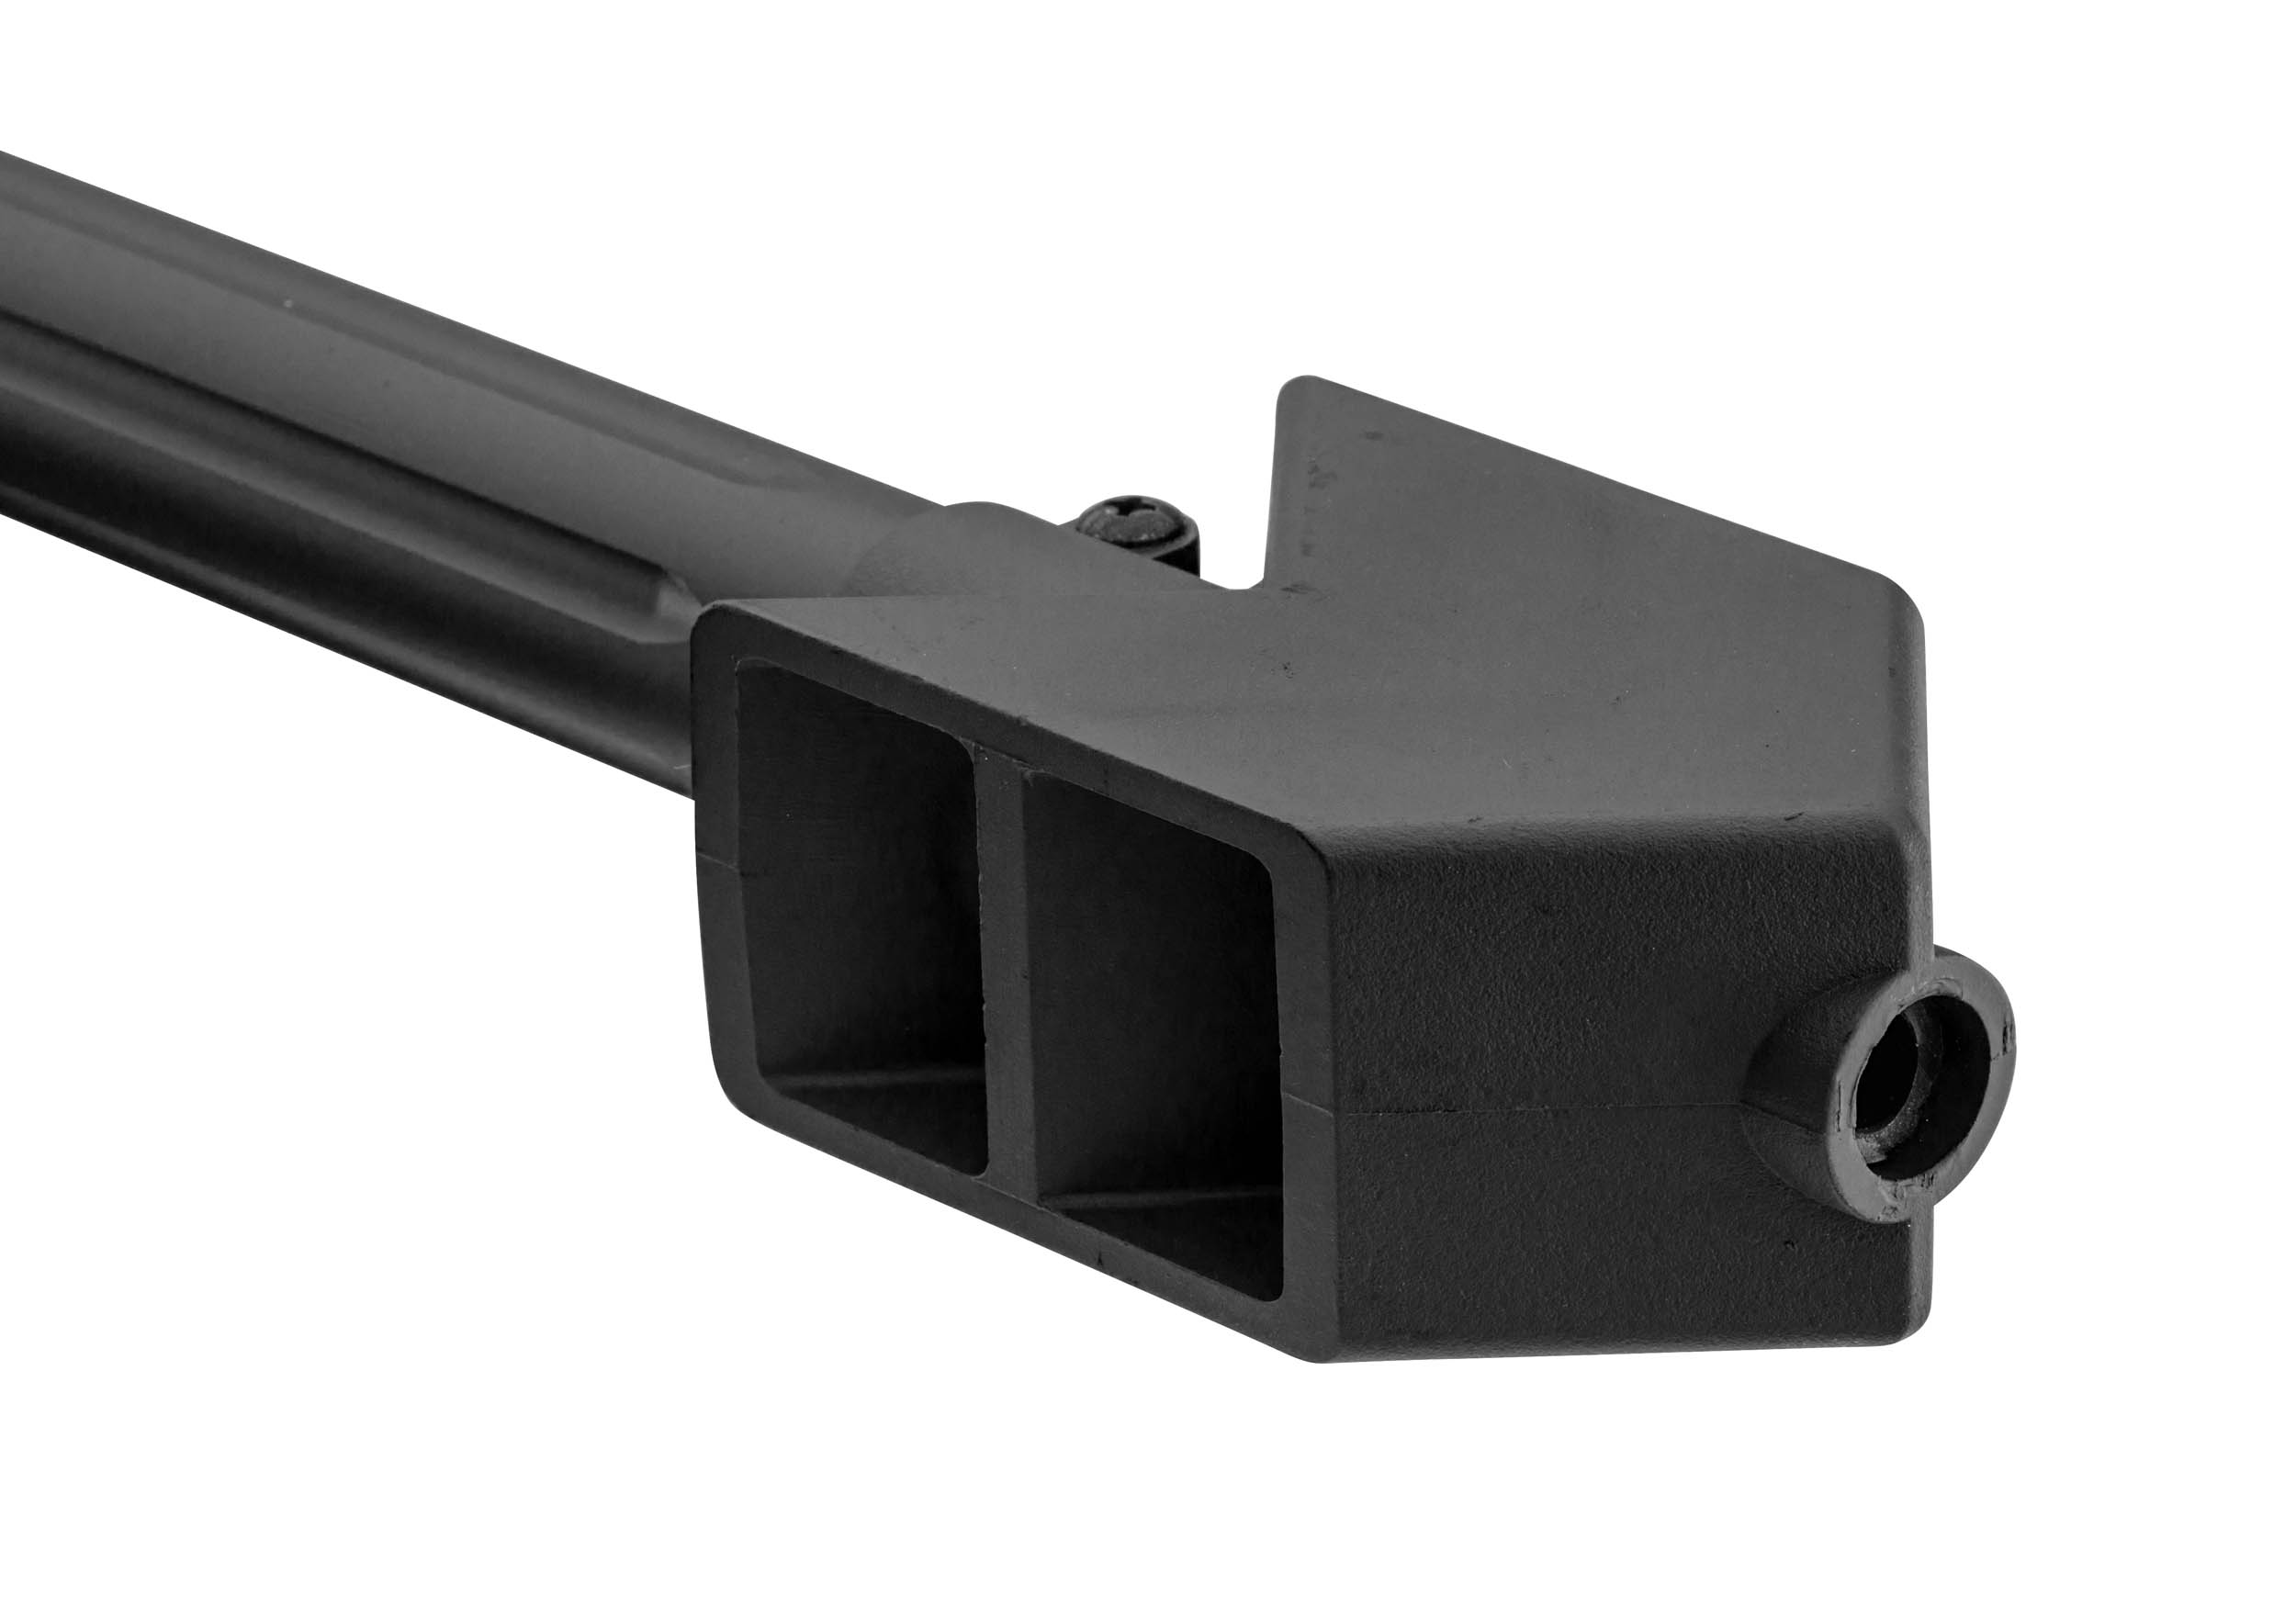 PCKLR3050-05 Pack Sniper LT-20 noir M82 1,5J + lunette + bi-pied + poignée - PCKLR3050